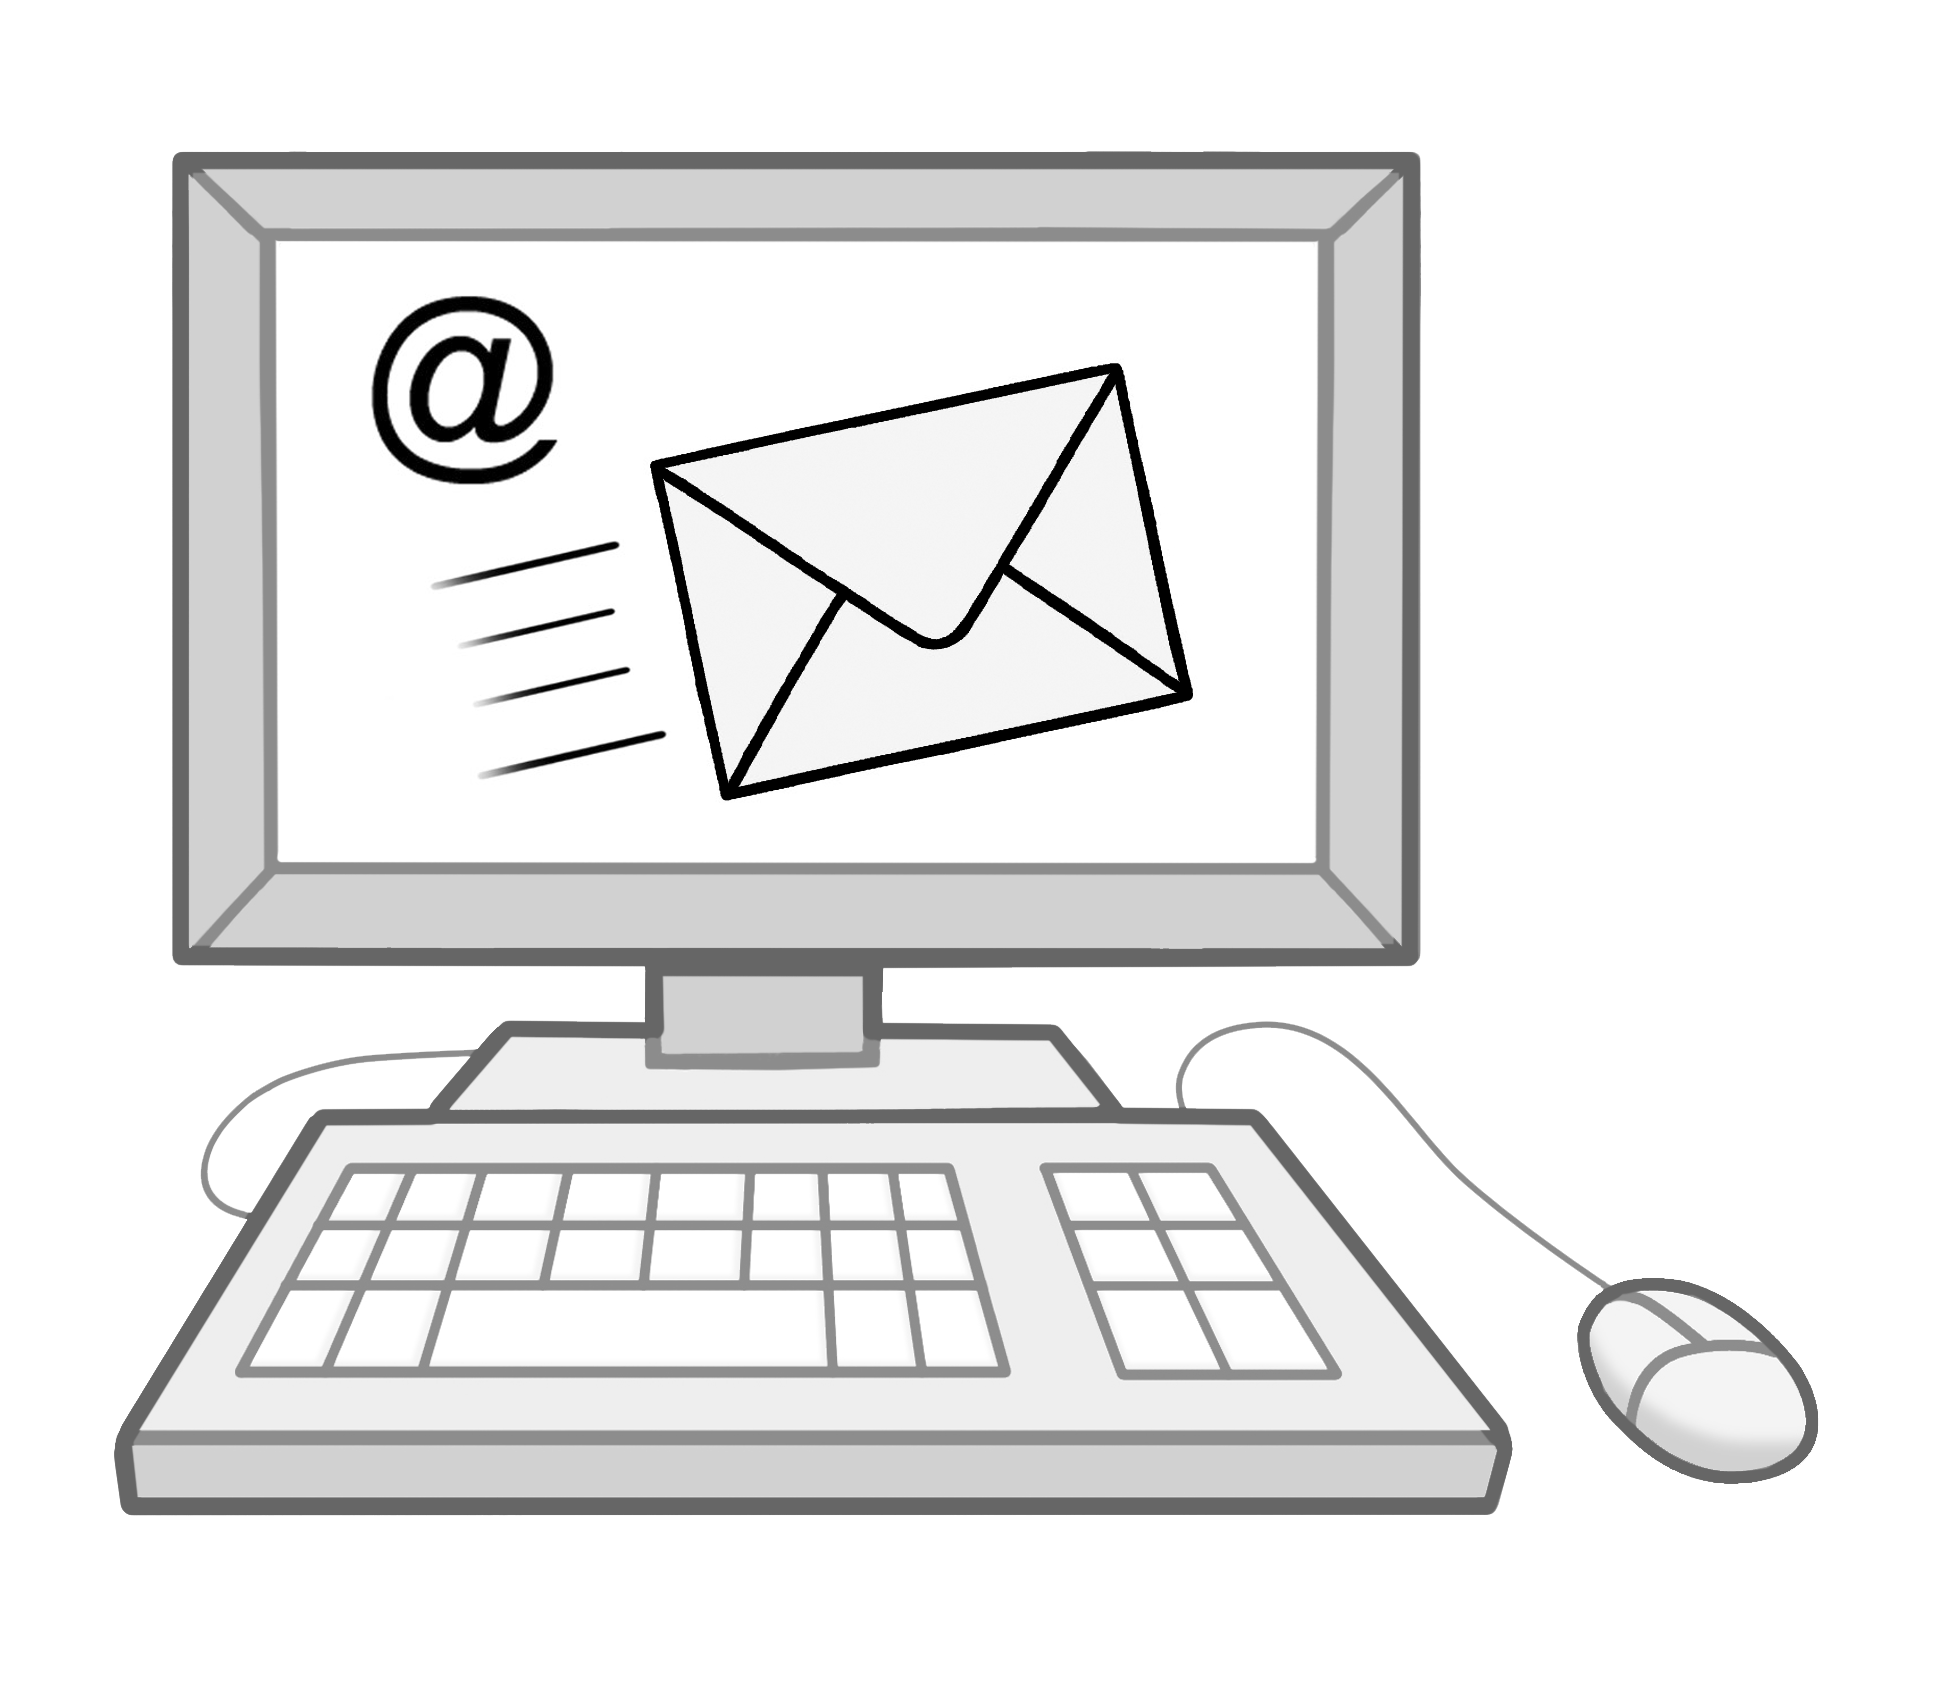 Ein gezeichneter Computer mit einem E-Mailsymbol im Bildschirm.